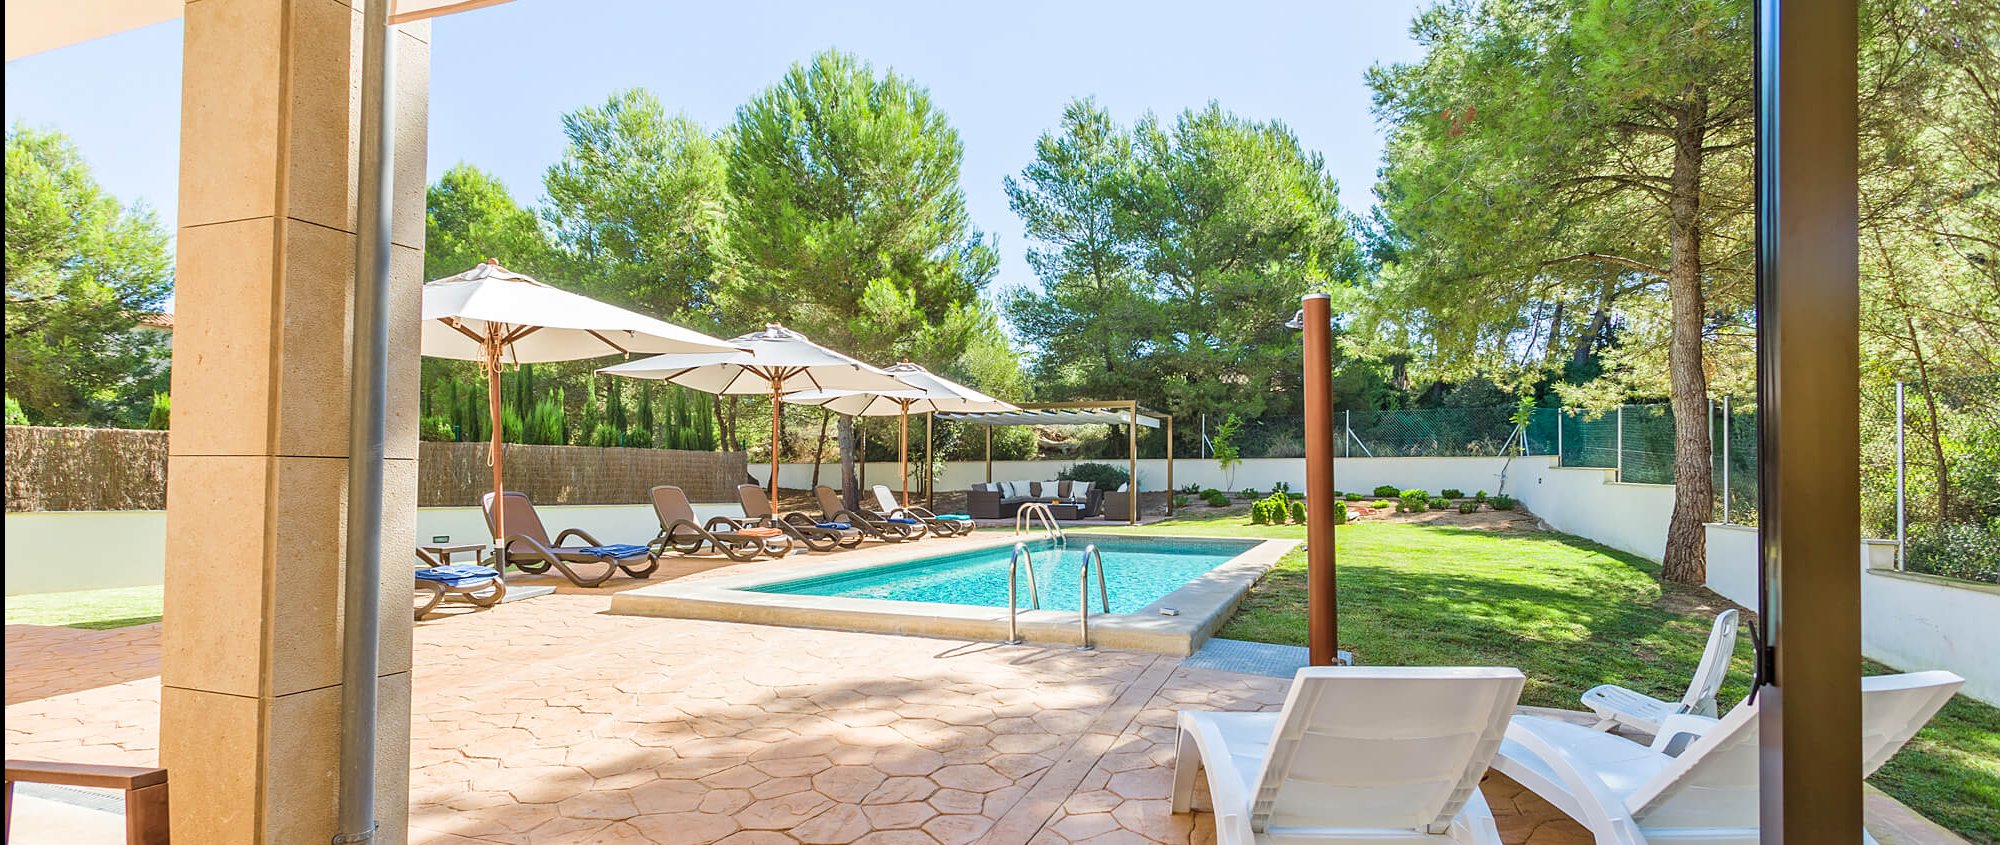 Ferienhaus auf Mallorca Strandnah und mit Pool mieten